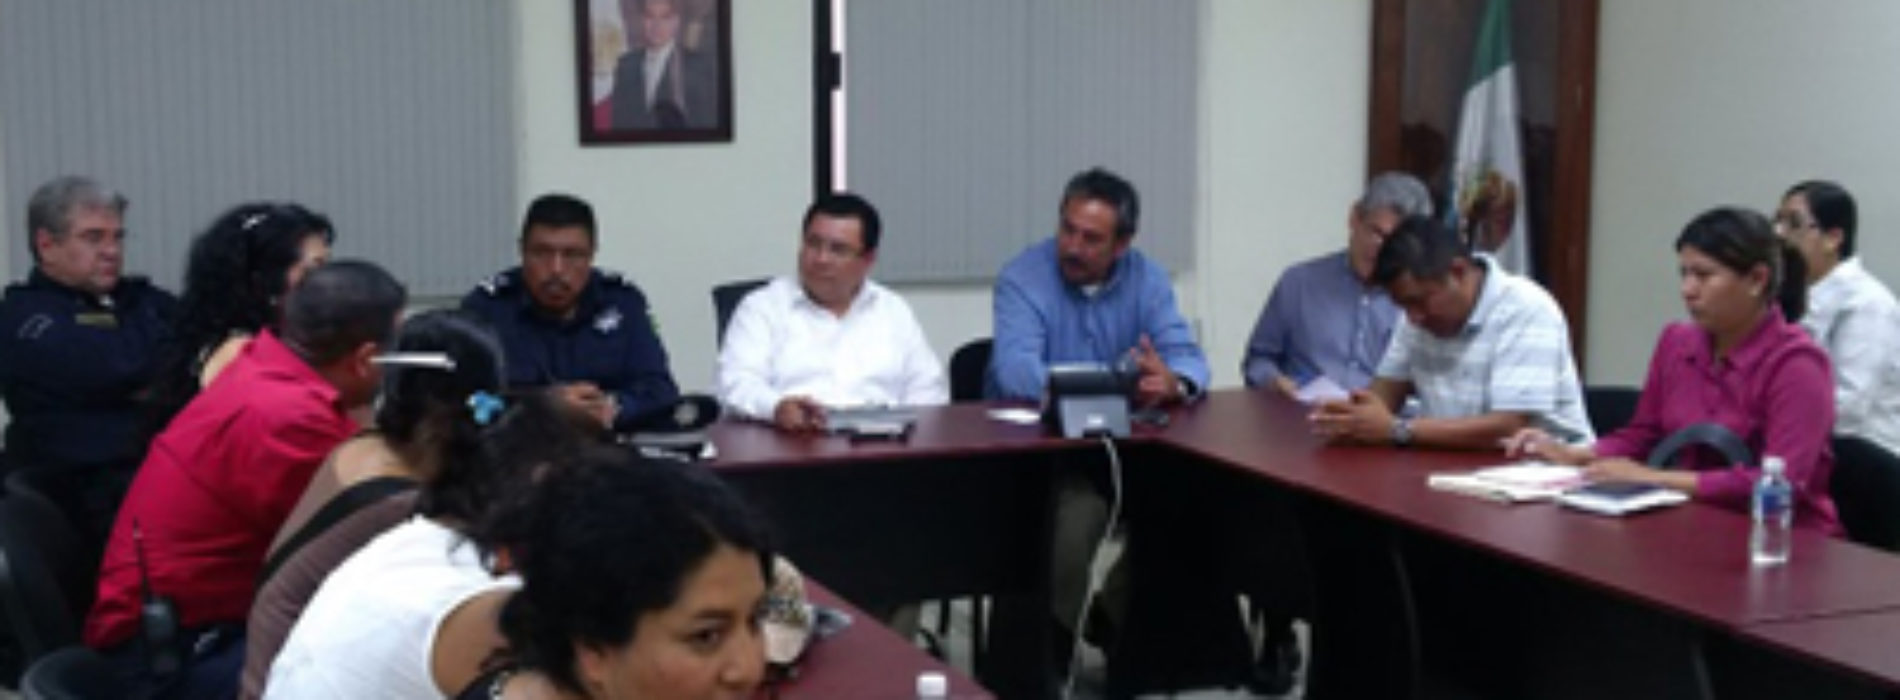 Atiende Secretaría de Vialidad y Transporte demandas de mototaxistas de la agencia Montoya